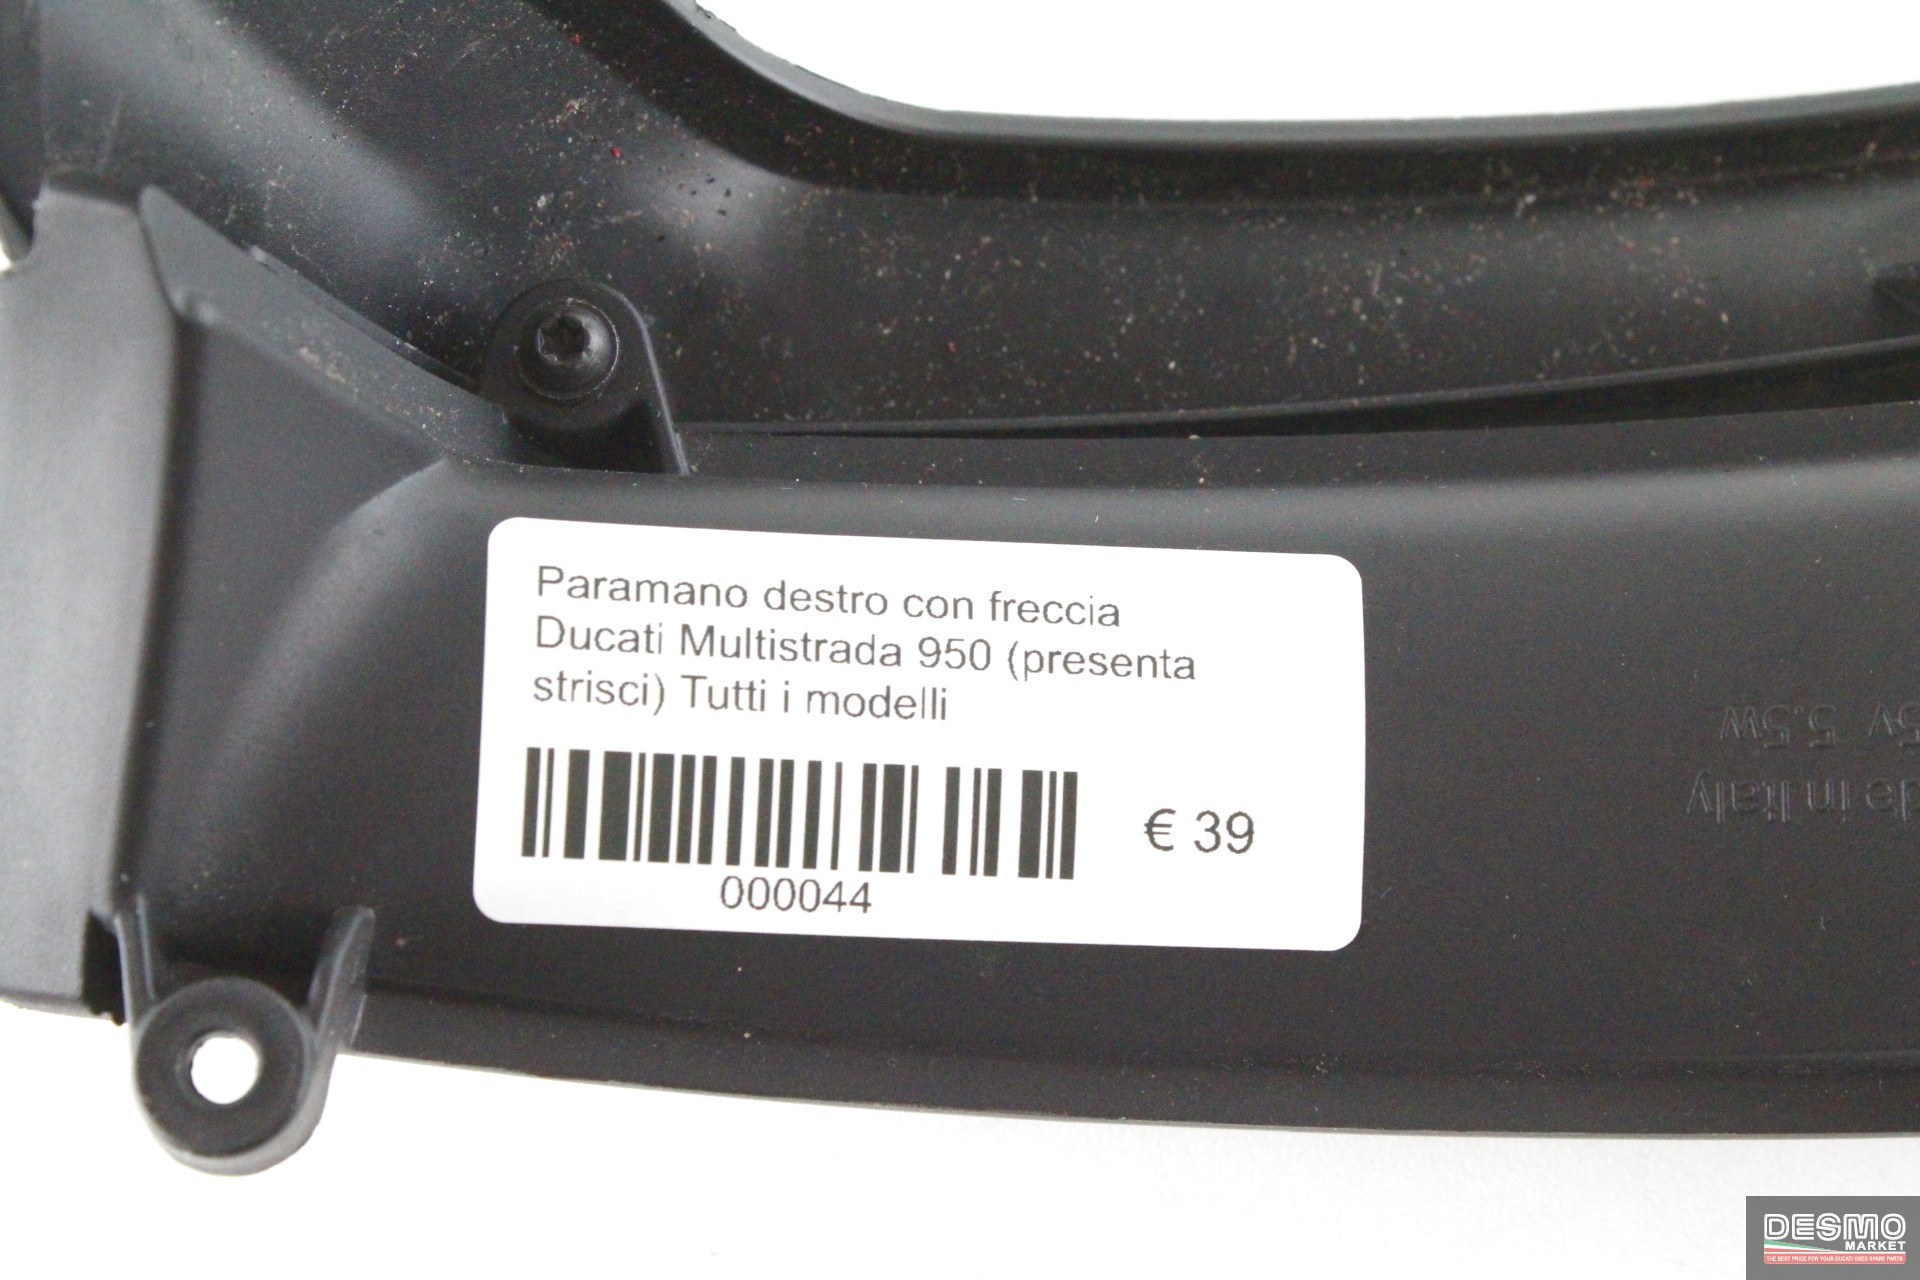 Paramano destro con freccia Ducati Multistrada 950 (presenta strisci)